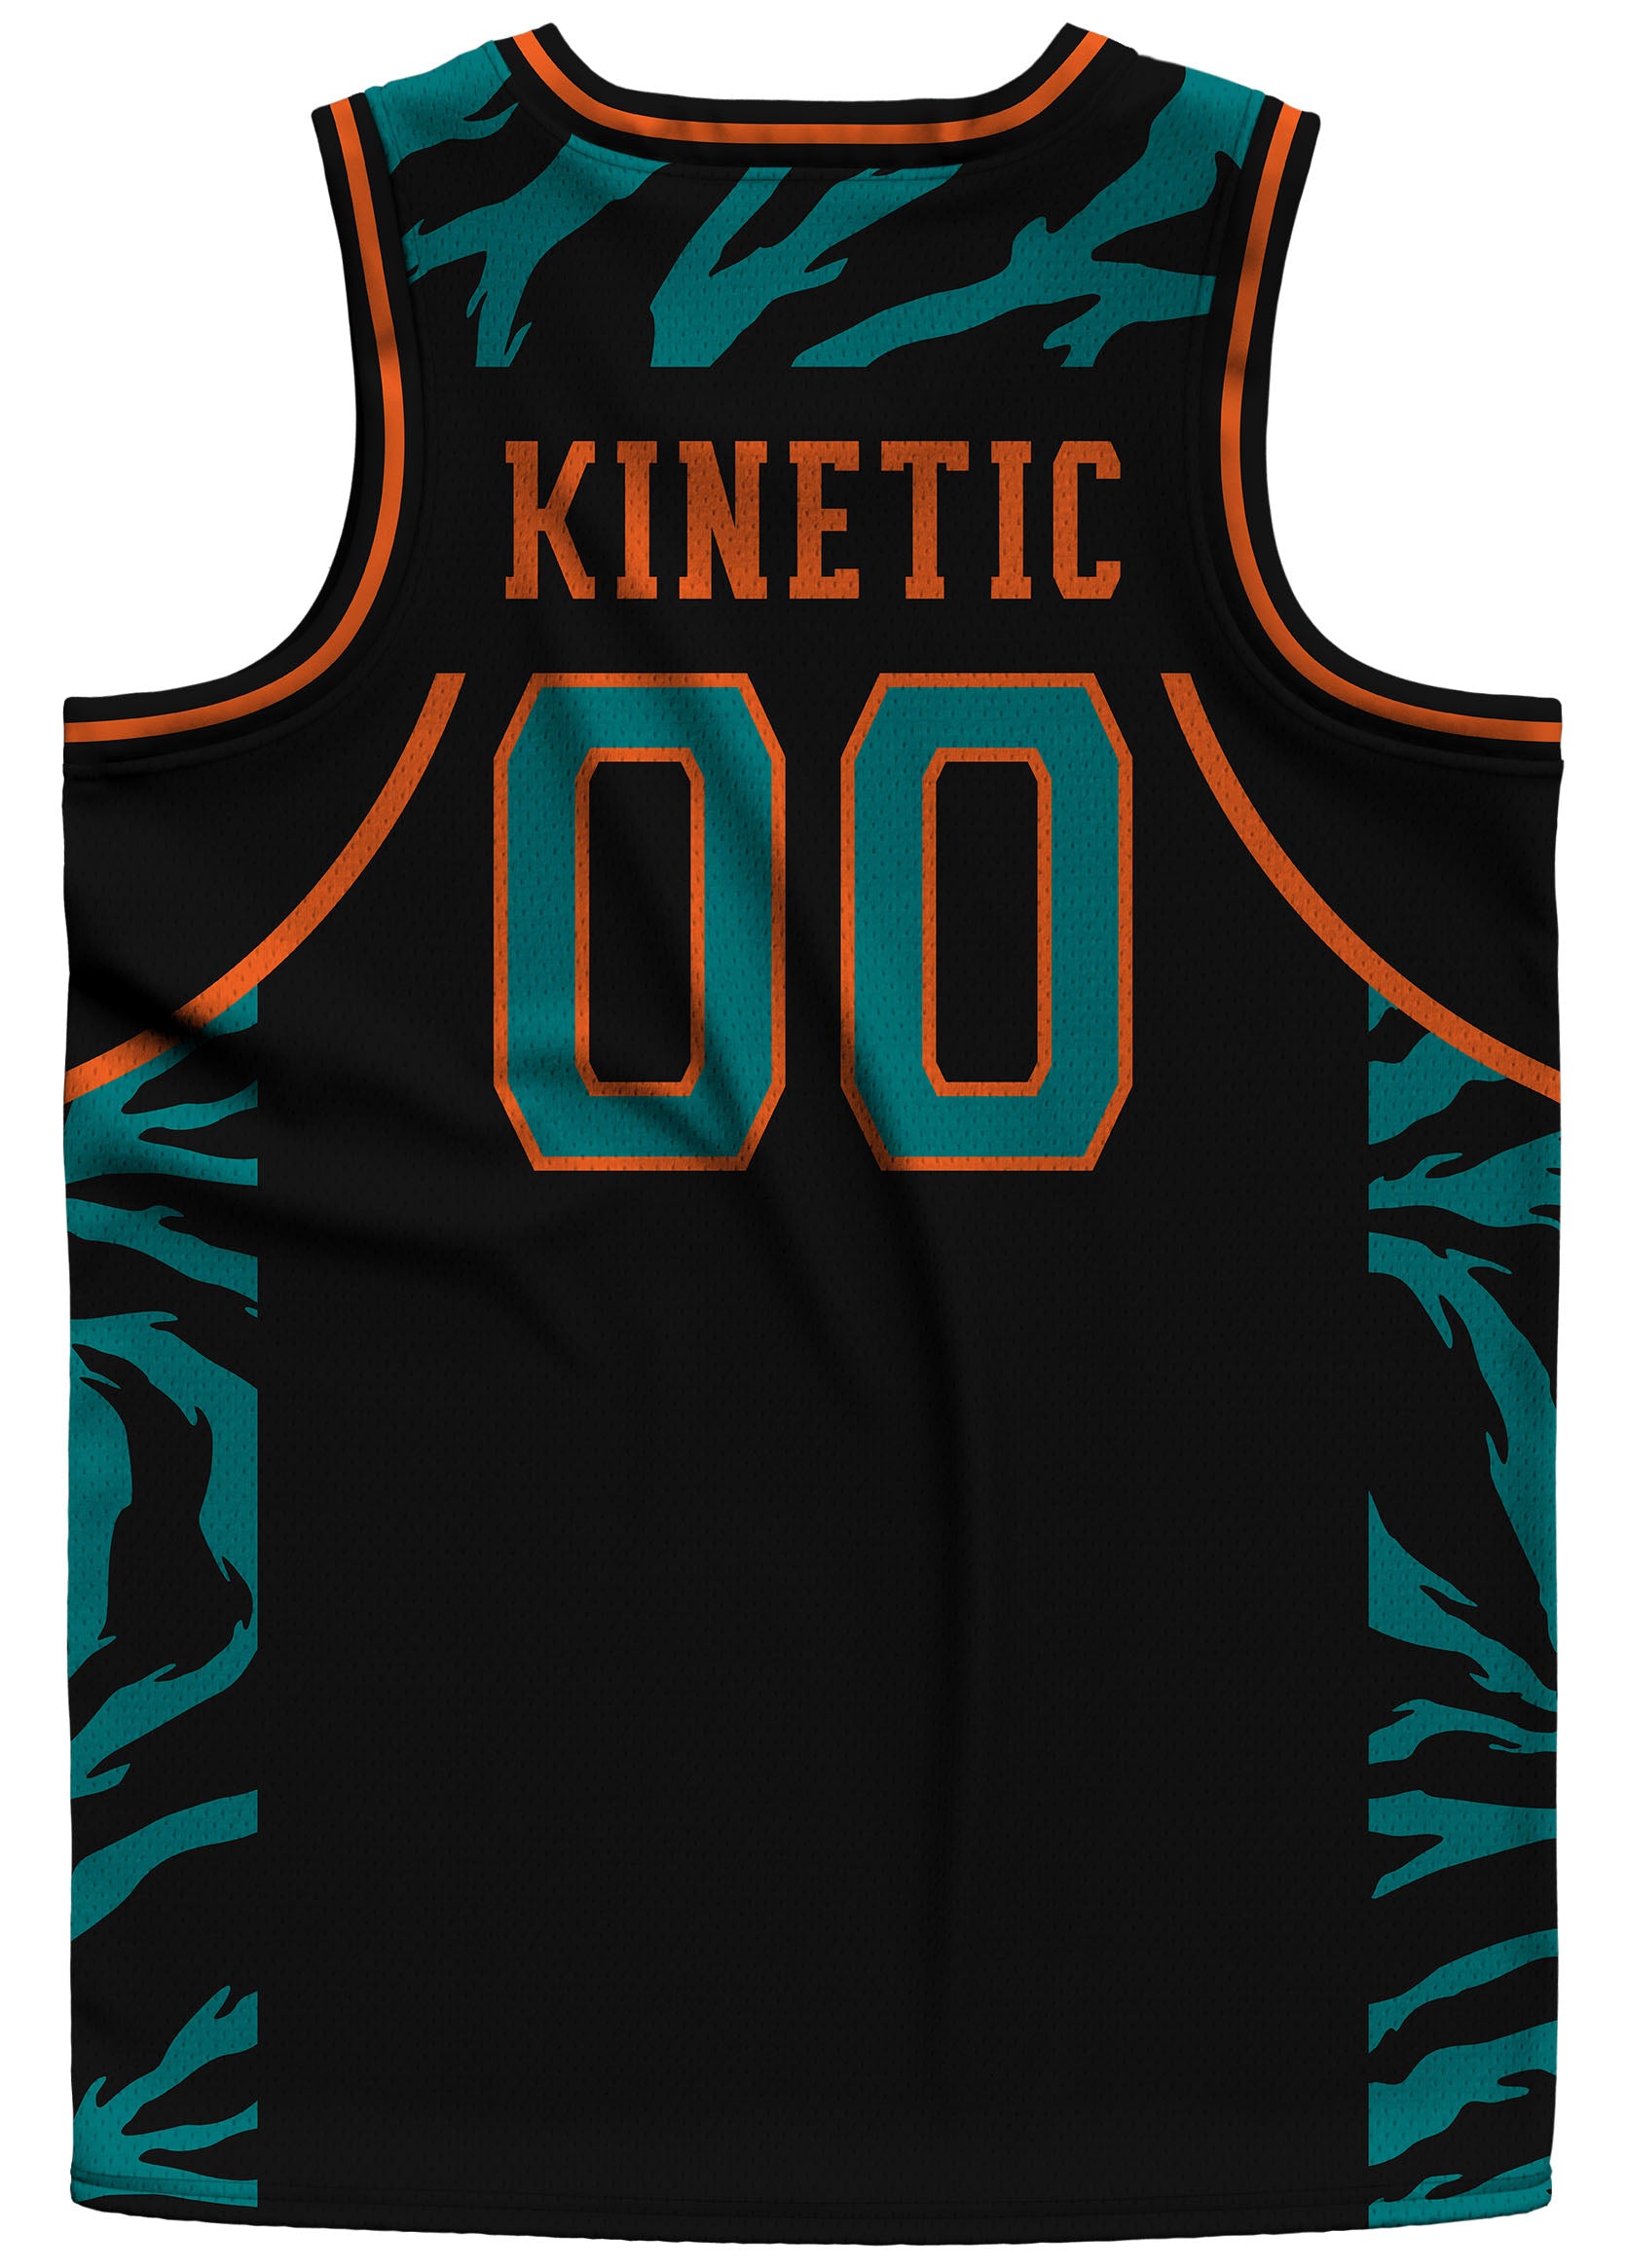 Kinetic ID - Camo Basketball Jersey